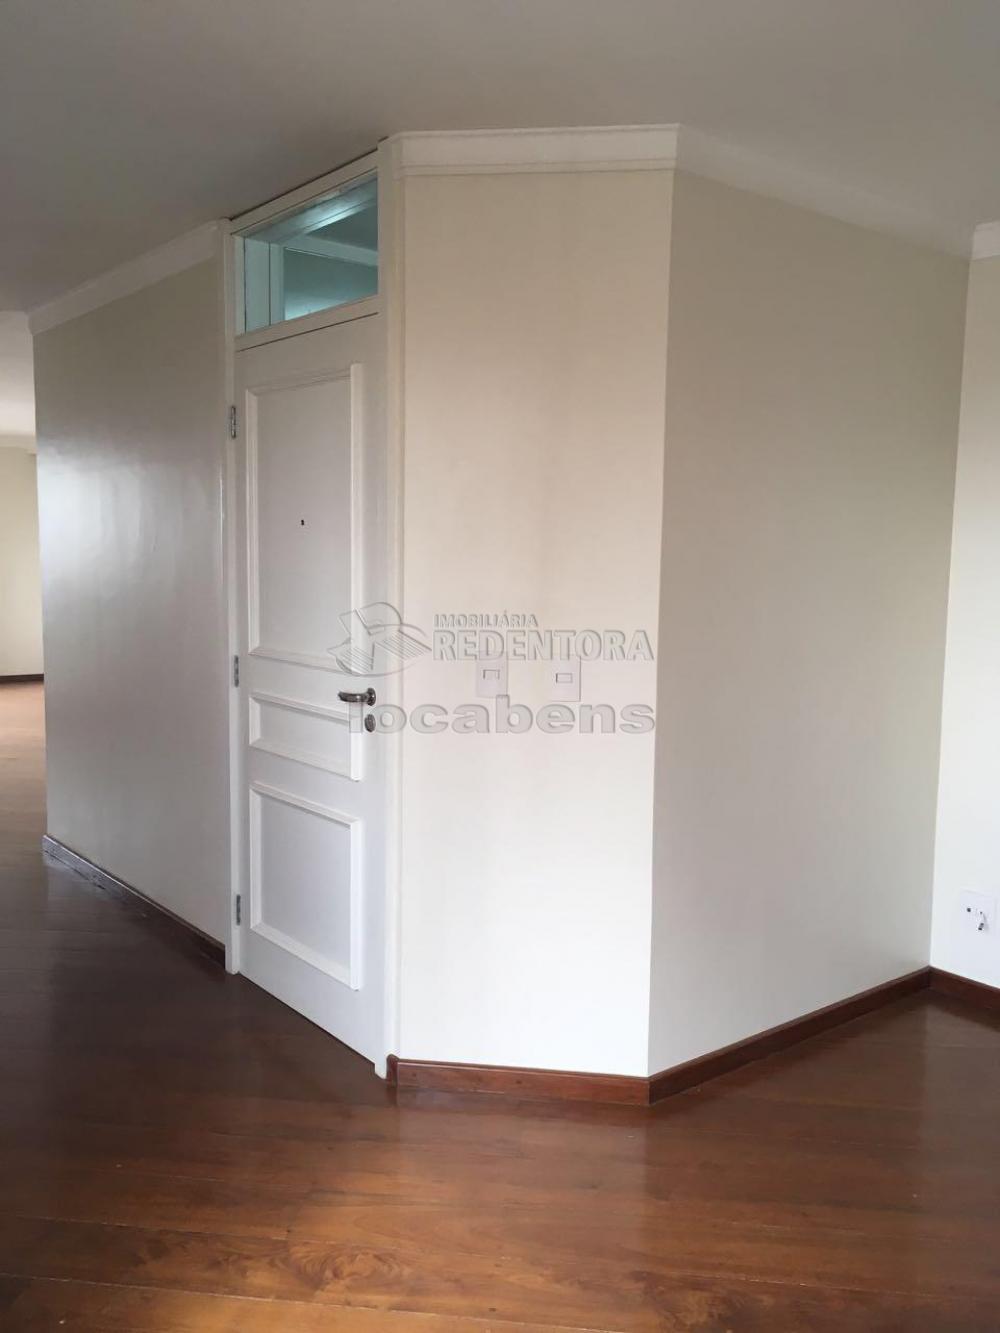 Alugar Apartamento / Padrão em São José do Rio Preto apenas R$ 1.950,00 - Foto 20